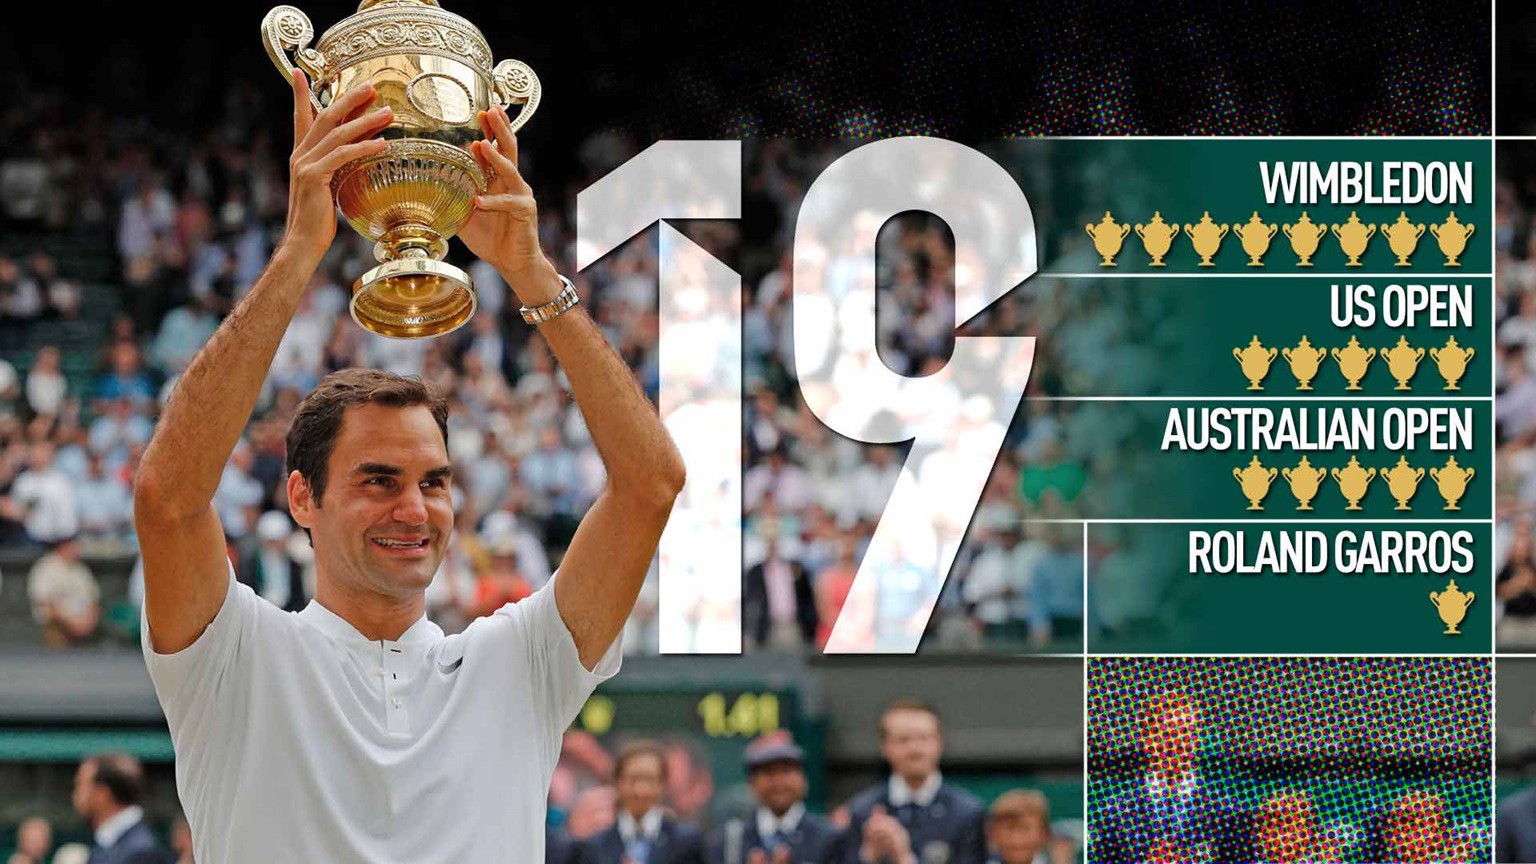 19 danh hiệu Grand Slam của Federer sẽ là kỷ lục khó bị xô đổ